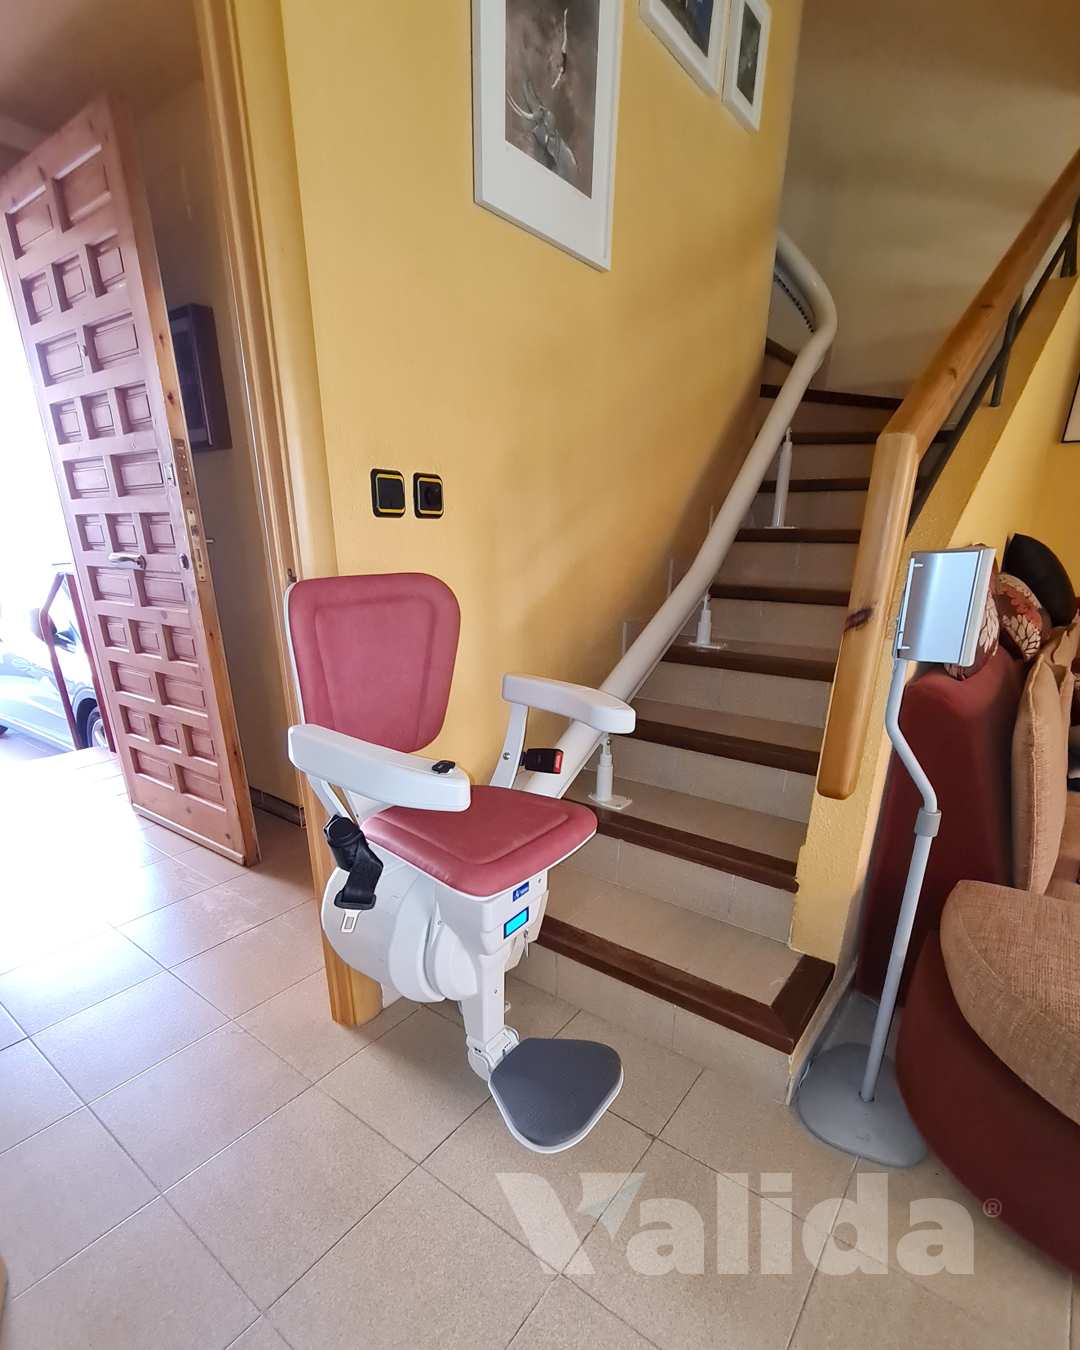 silla elevadora para vivienda particular en Cartuja Baja